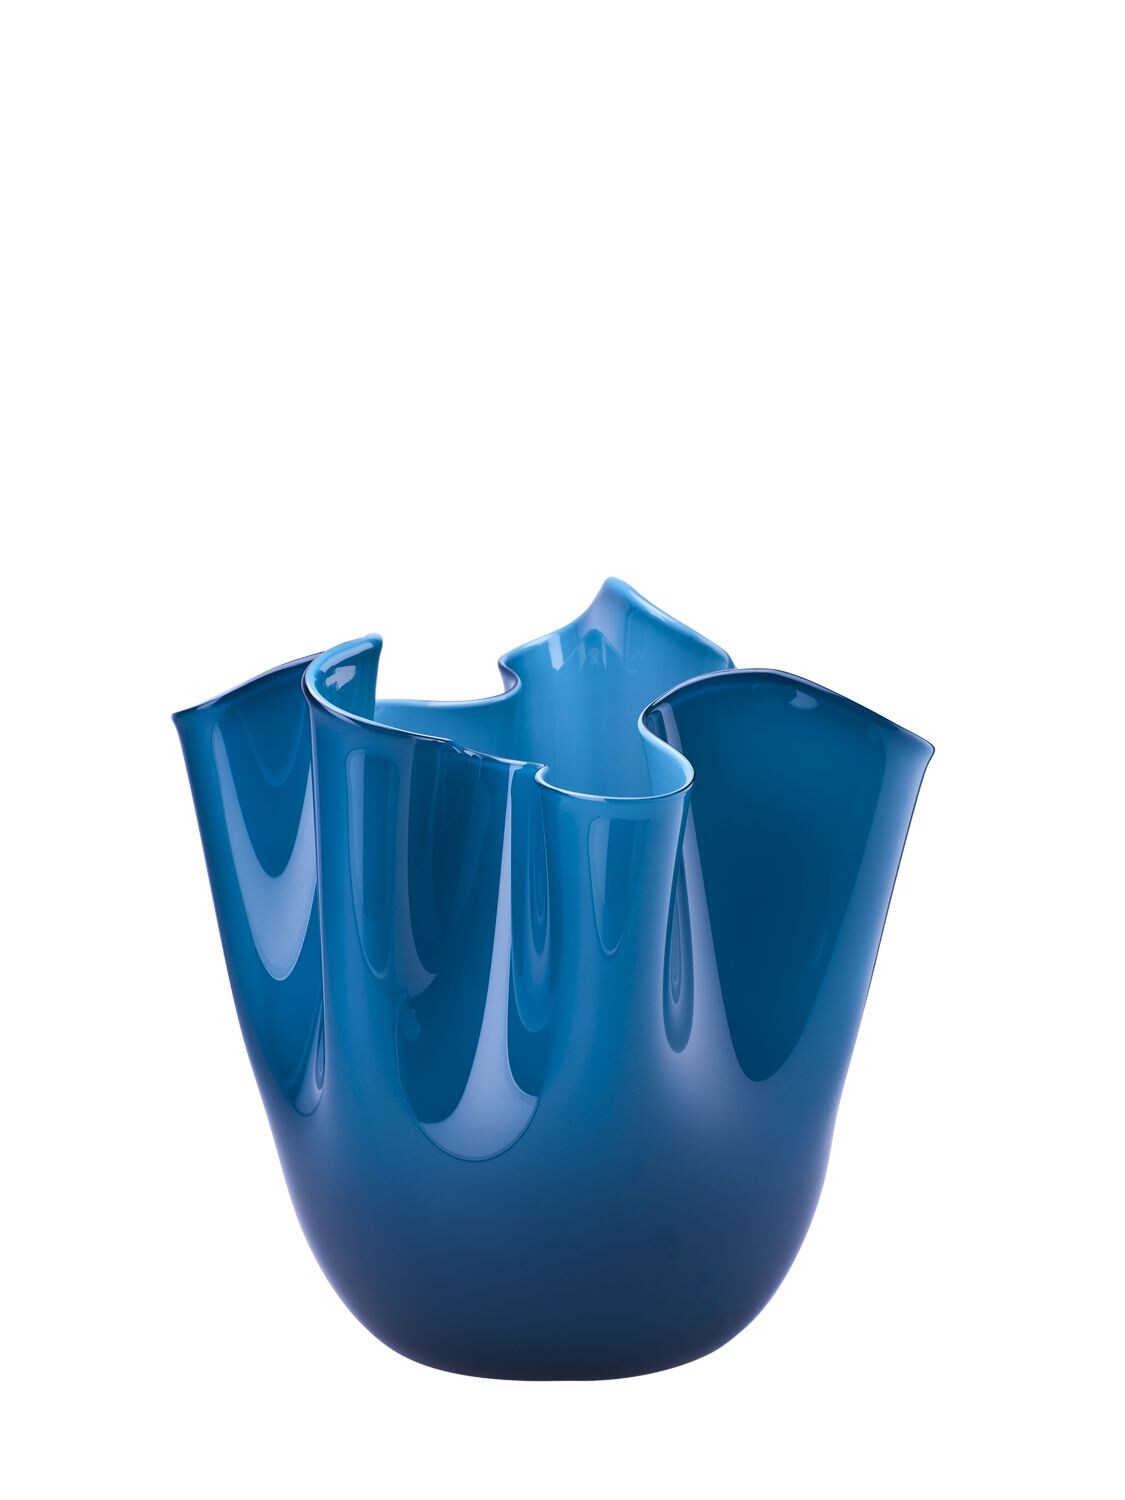 Venini Fazzoletto Small Vase In Horizon